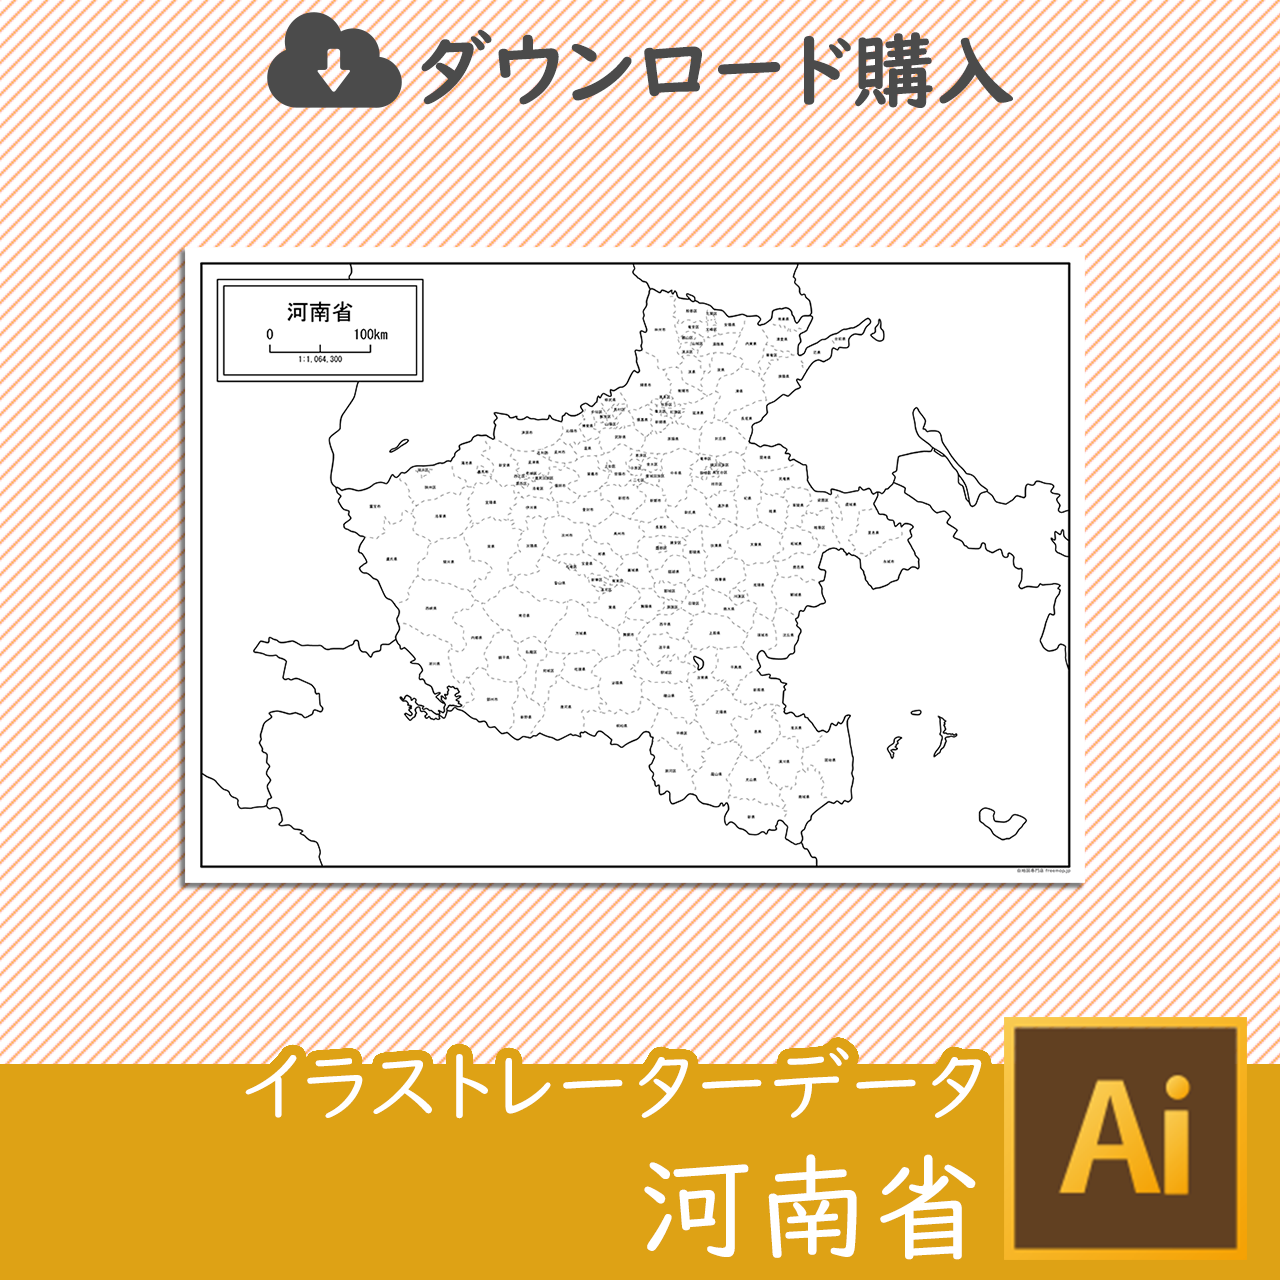 河南省の白地図データのサムネイル画像